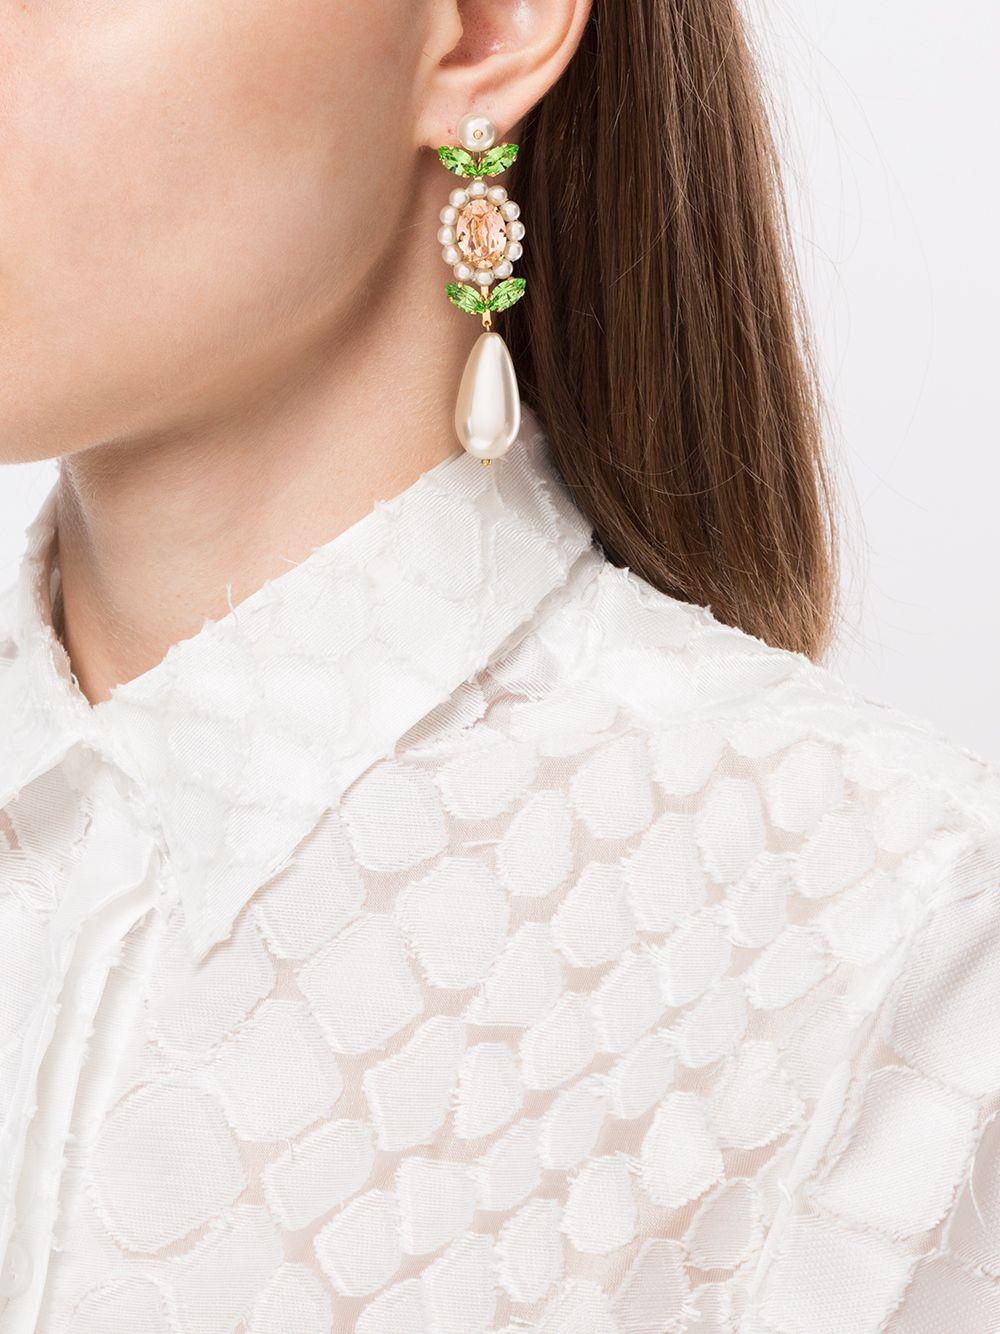 Simone Rocha Faux Pearl Crystal Earrings in Green - Lyst